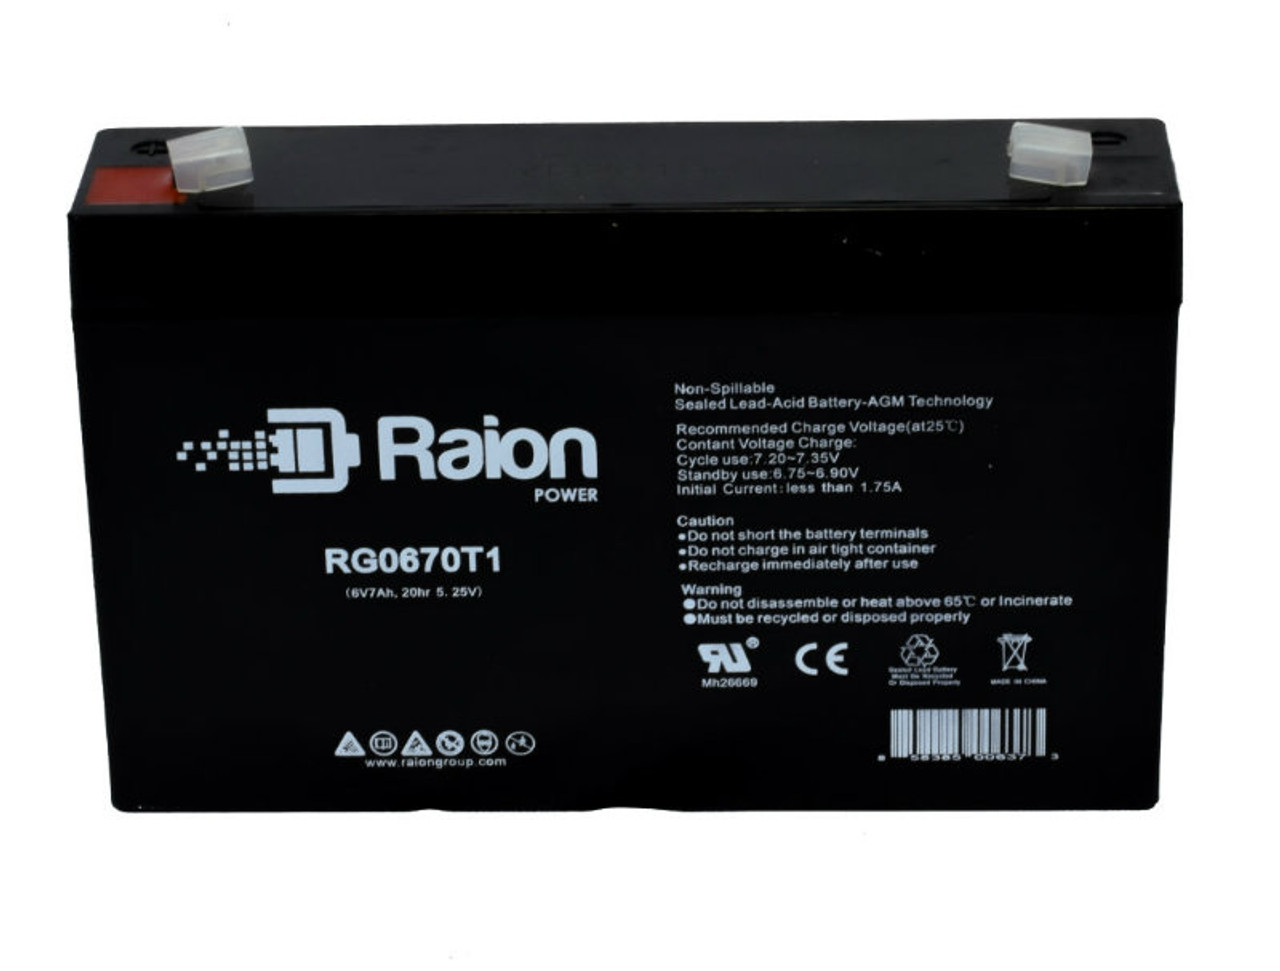 Raion Power RG0670T1 SLA Battery for Technacell EP66526 OEM Battery